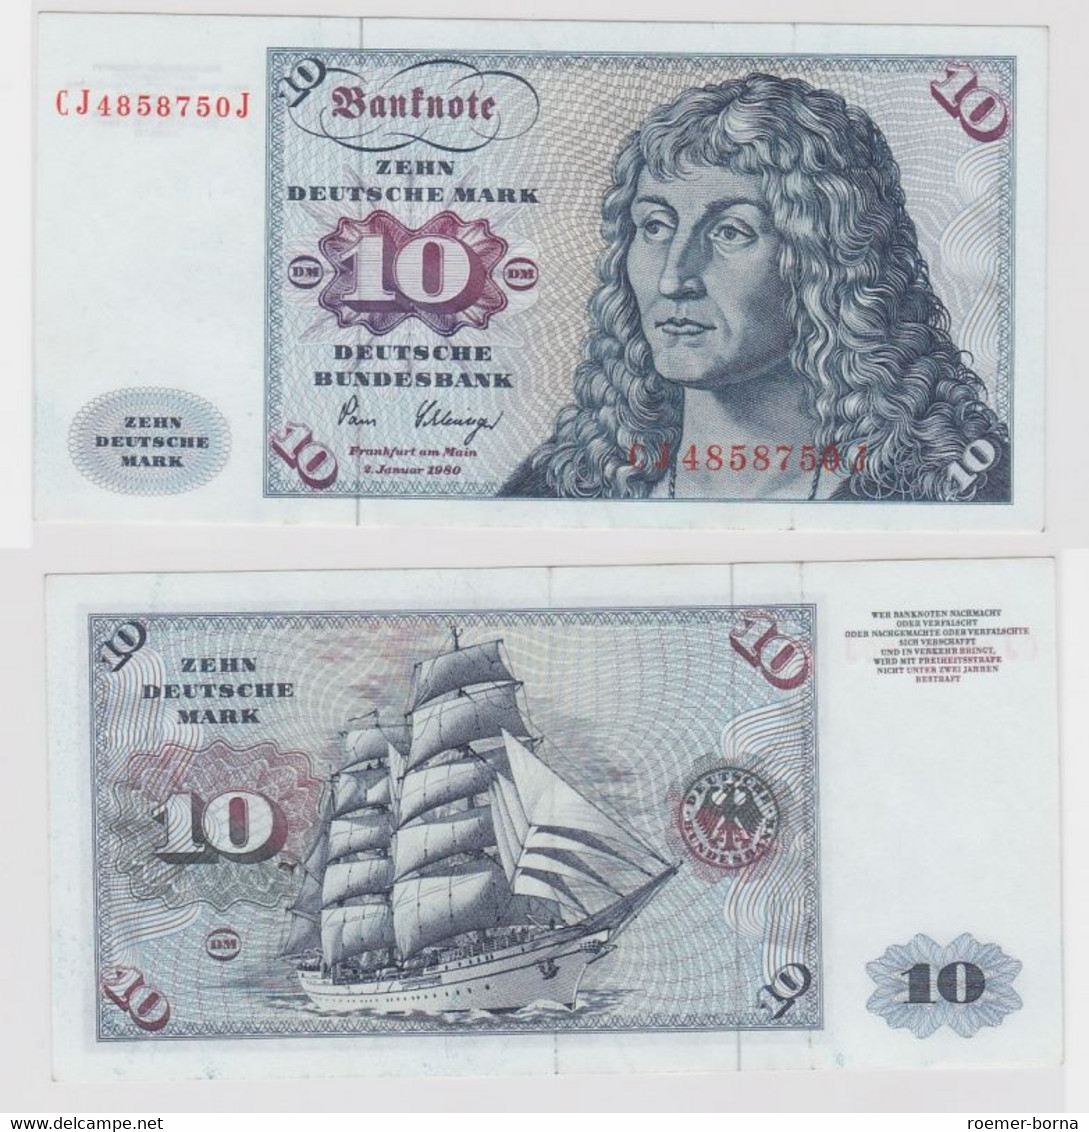 T146093 Banknote 10 DM Deutsche Mark Ro. 281a Schein 2.Jan. 1980 KN CJ 4858750 J - 10 DM